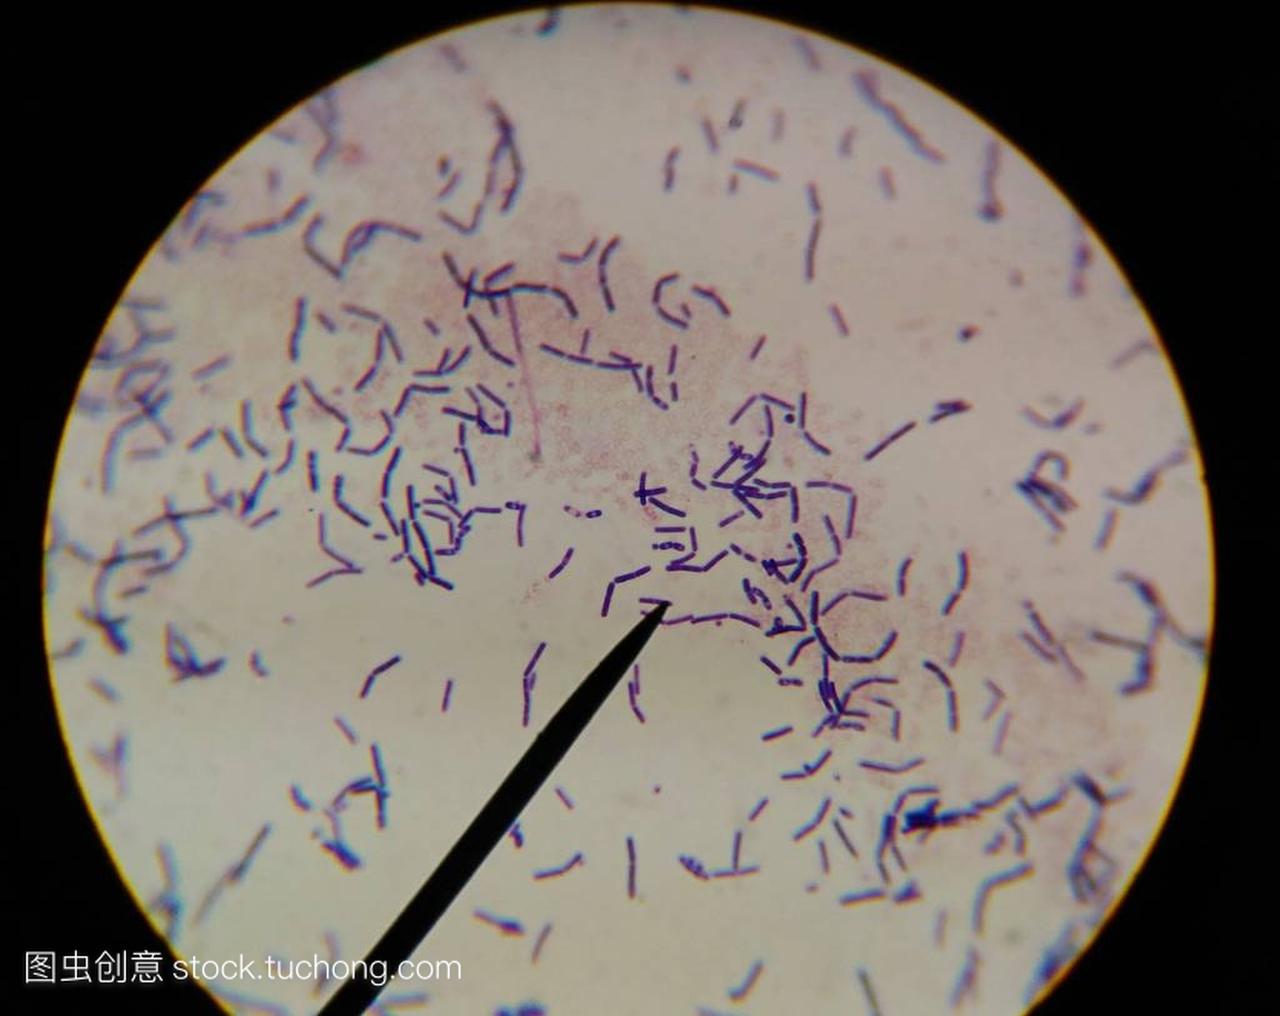 用显微镜发现细菌细胞